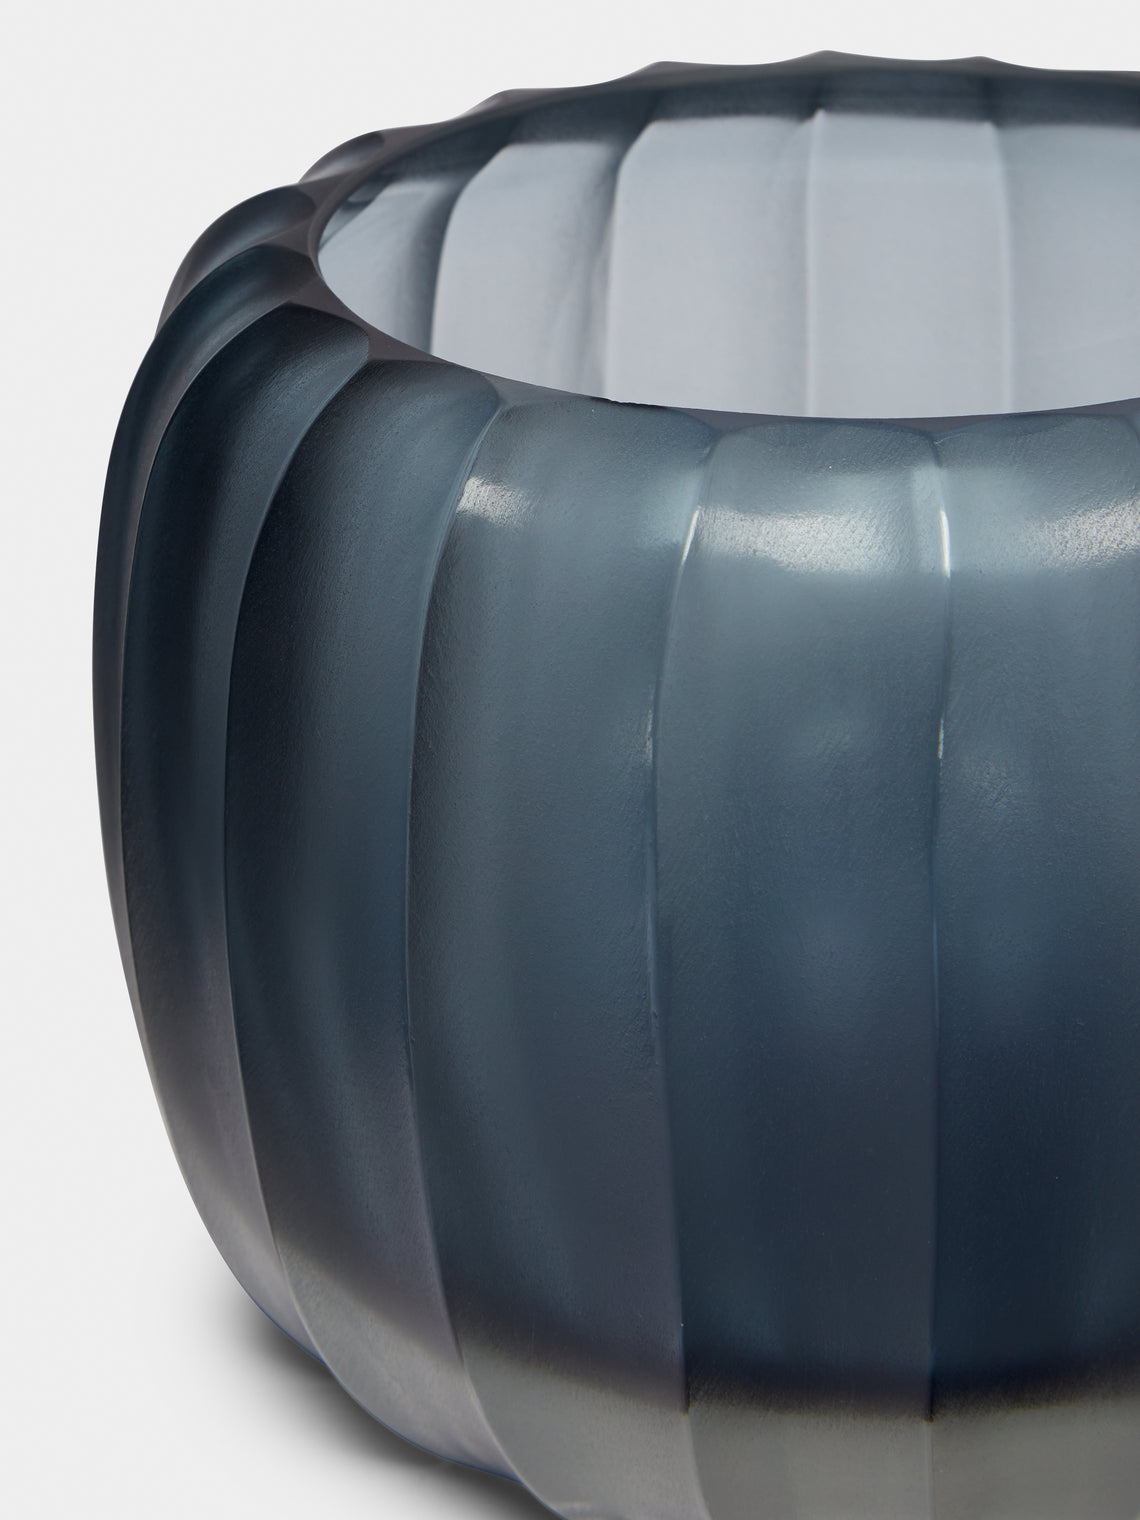 Micheluzzi Glass - Pozzo Oceano Hand-Blown Murano Glass Vase - Blue - ABASK